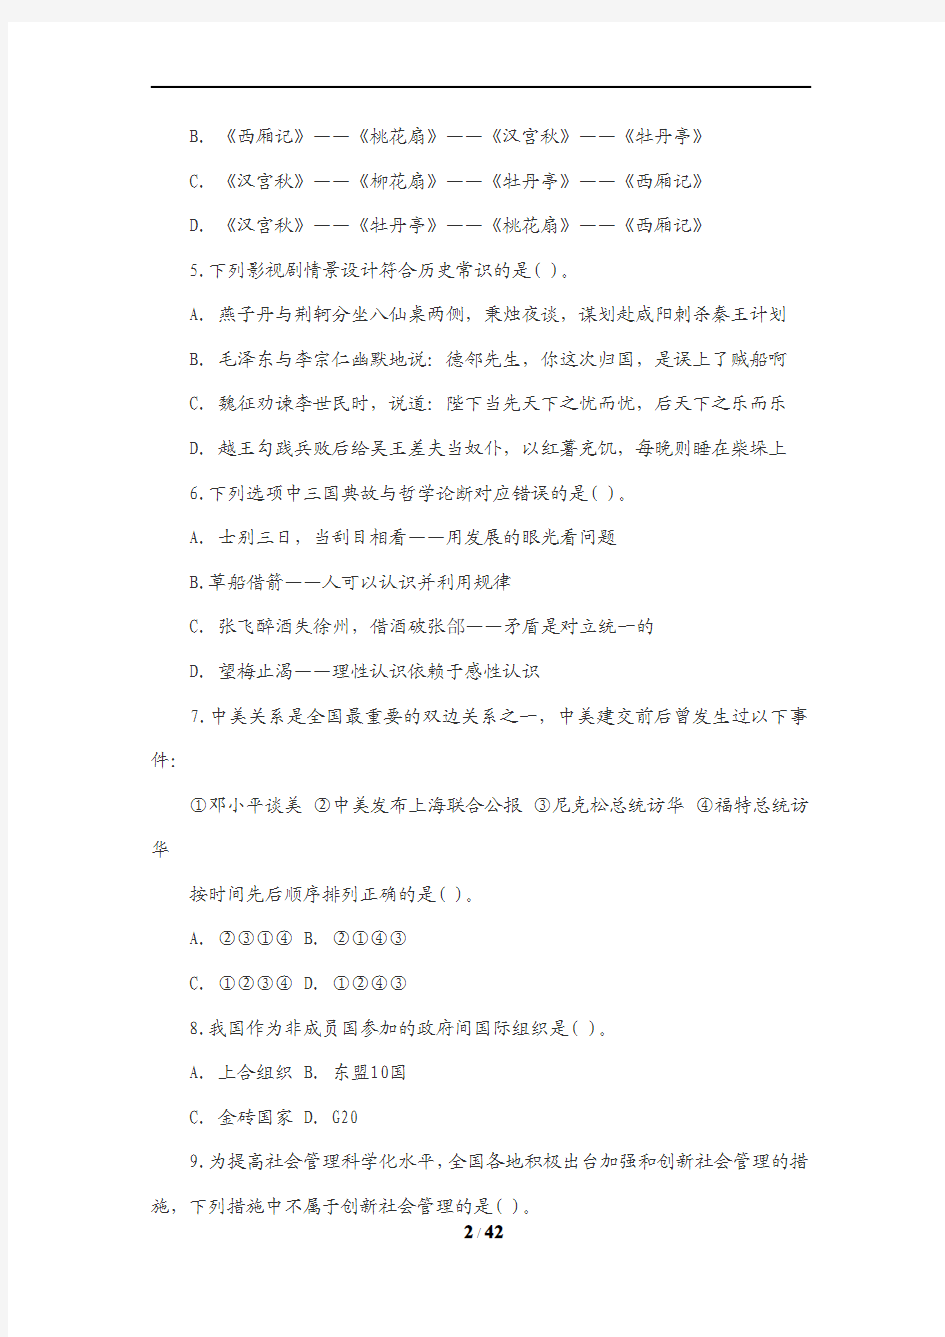 2012年黑龙江省公务员考试行测真题及答案解析(无水印)